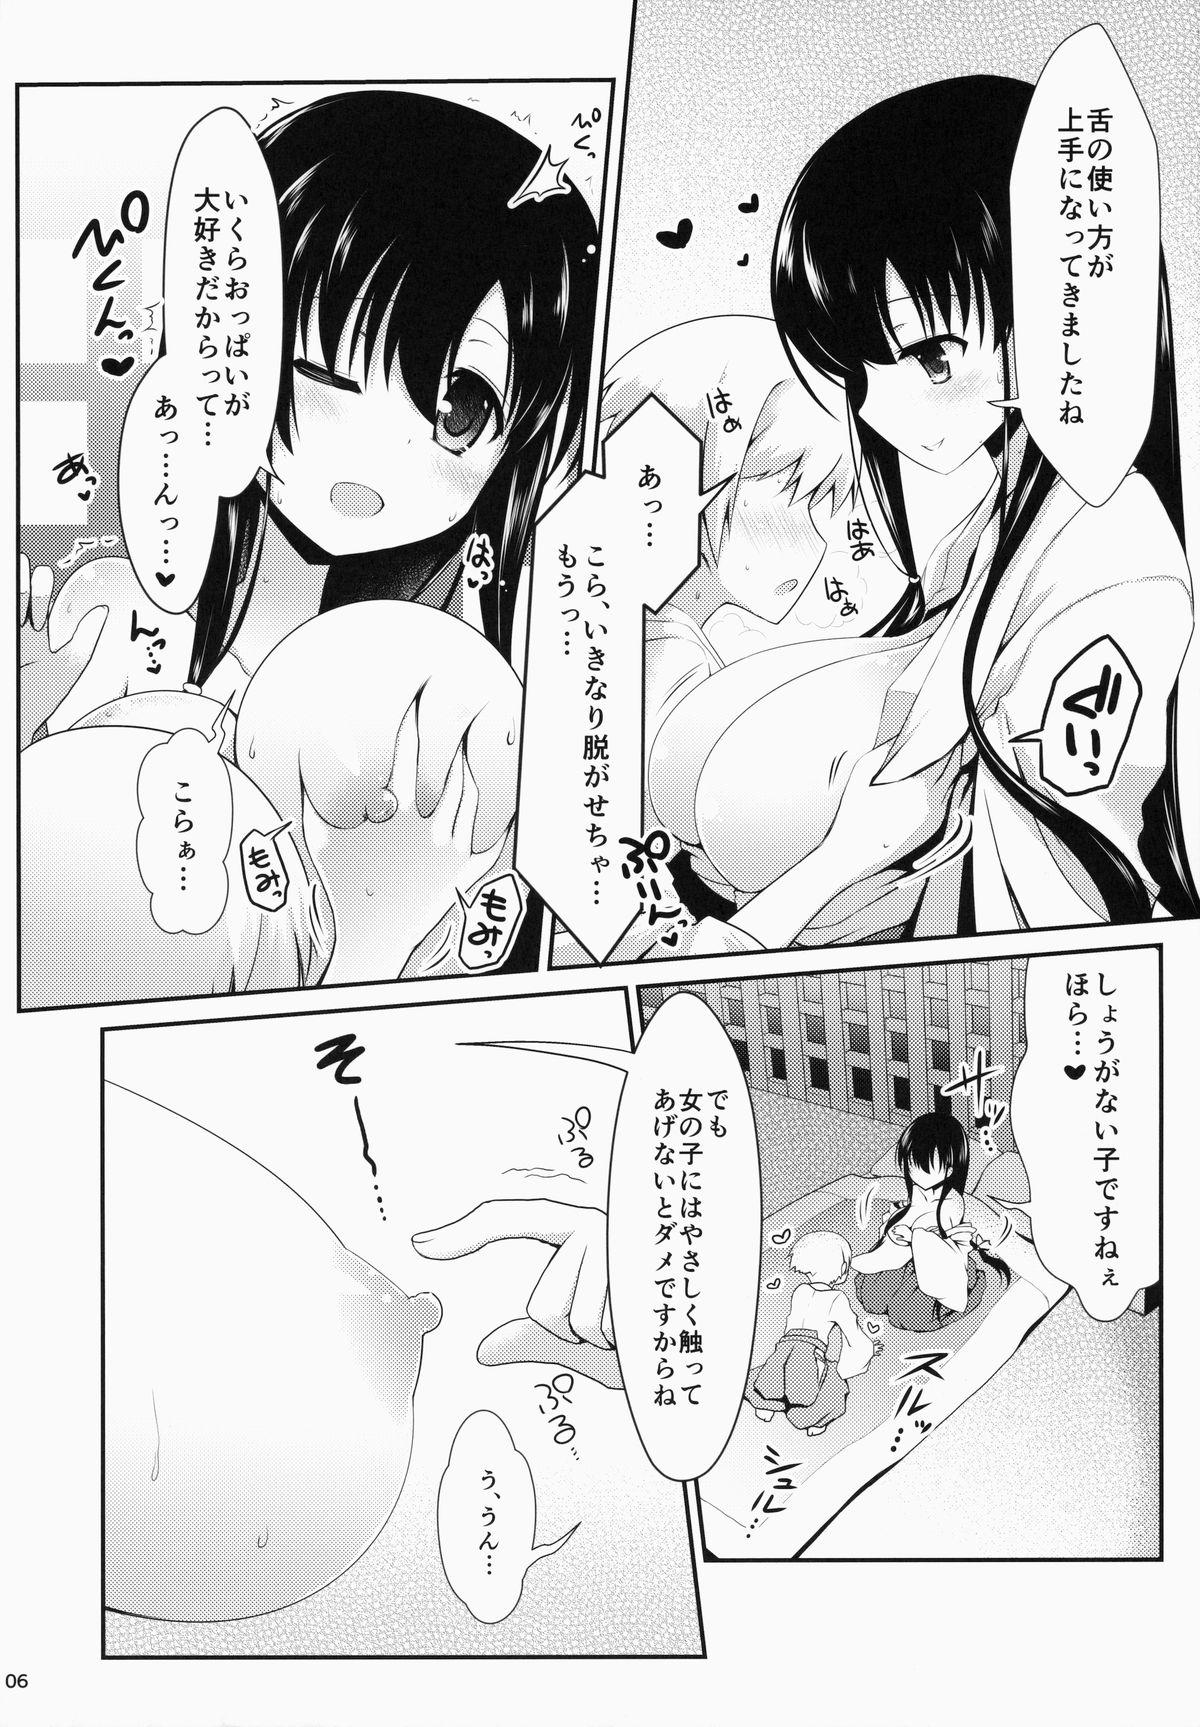 Dominate Eisui no Mori no Mankai no Shita - Saki Student - Page 6